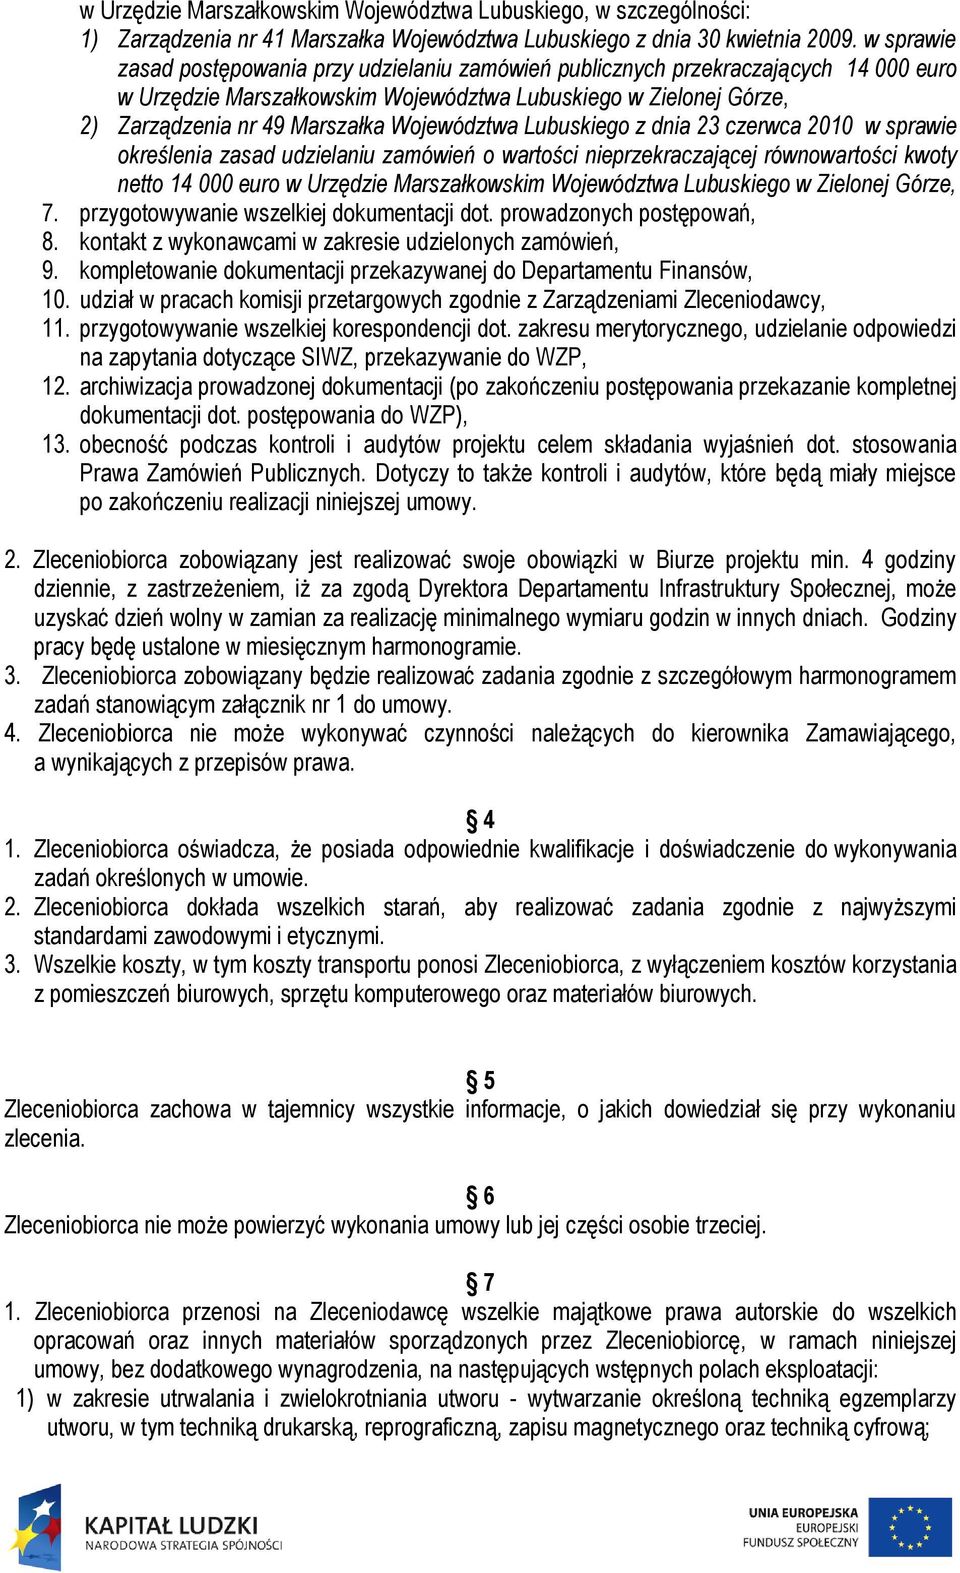 Województwa Lubuskiego z dnia 23 czerwca 2010 w sprawie określenia zasad udzielaniu zamówień o wartości nieprzekraczającej równowartości kwoty netto 14 000 euro w Urzędzie Marszałkowskim Województwa